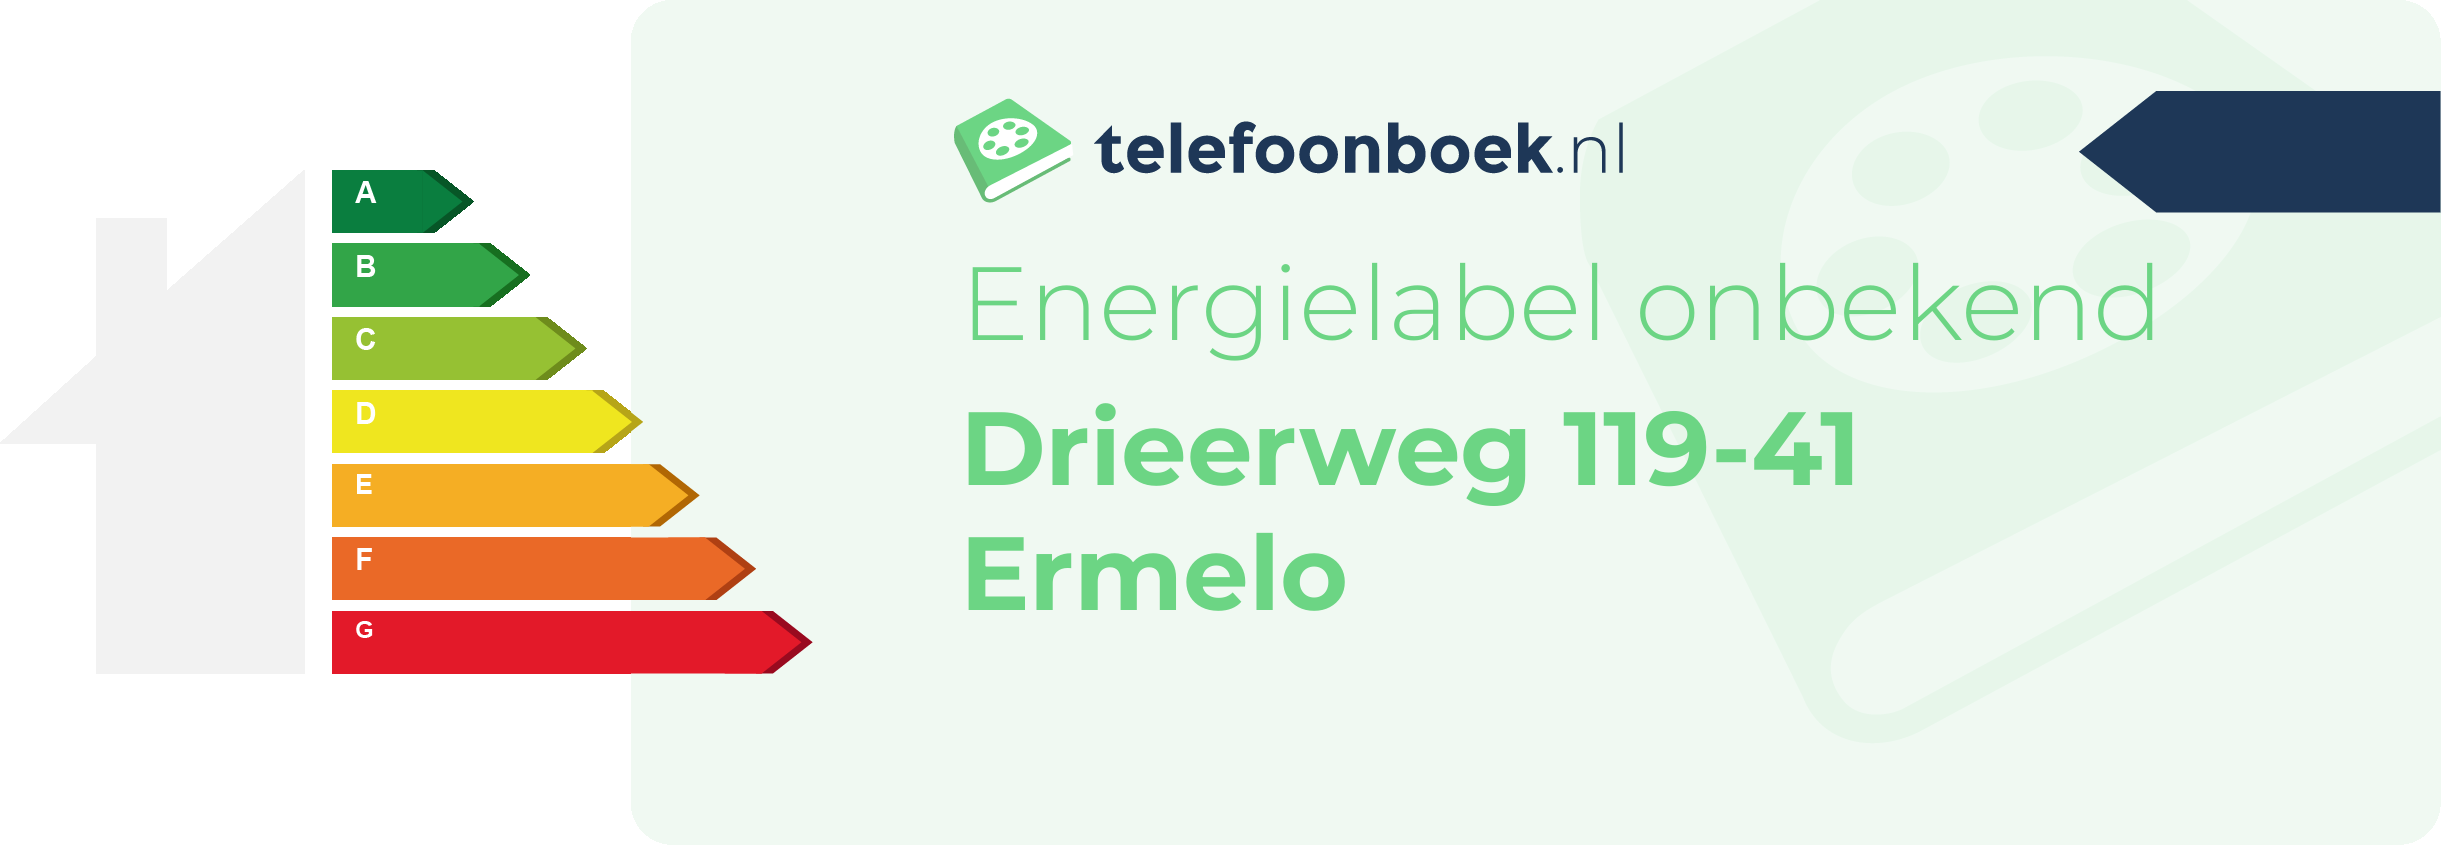 Energielabel Drieerweg 119-41 Ermelo